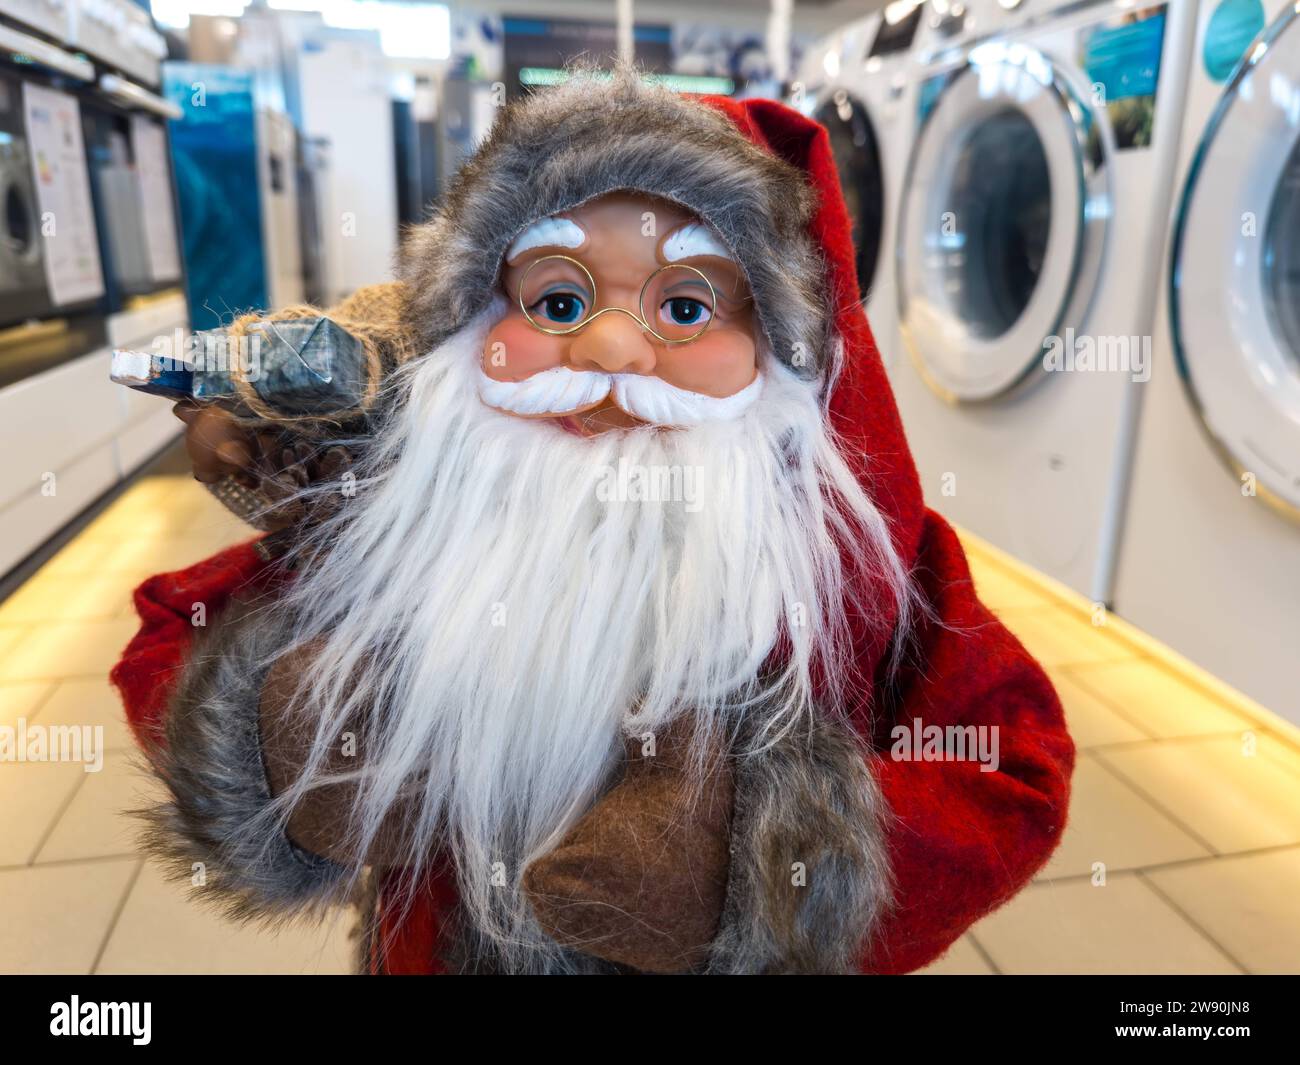 Augsburg, Bavaria, Germany - December 14, 2023: Santa Claus figure in a store. Christmas decoration in retail *** Weihnachtsmann Figur in einem Geschäft. Weihnachtsdekoration im Einzelhandel Stock Photo